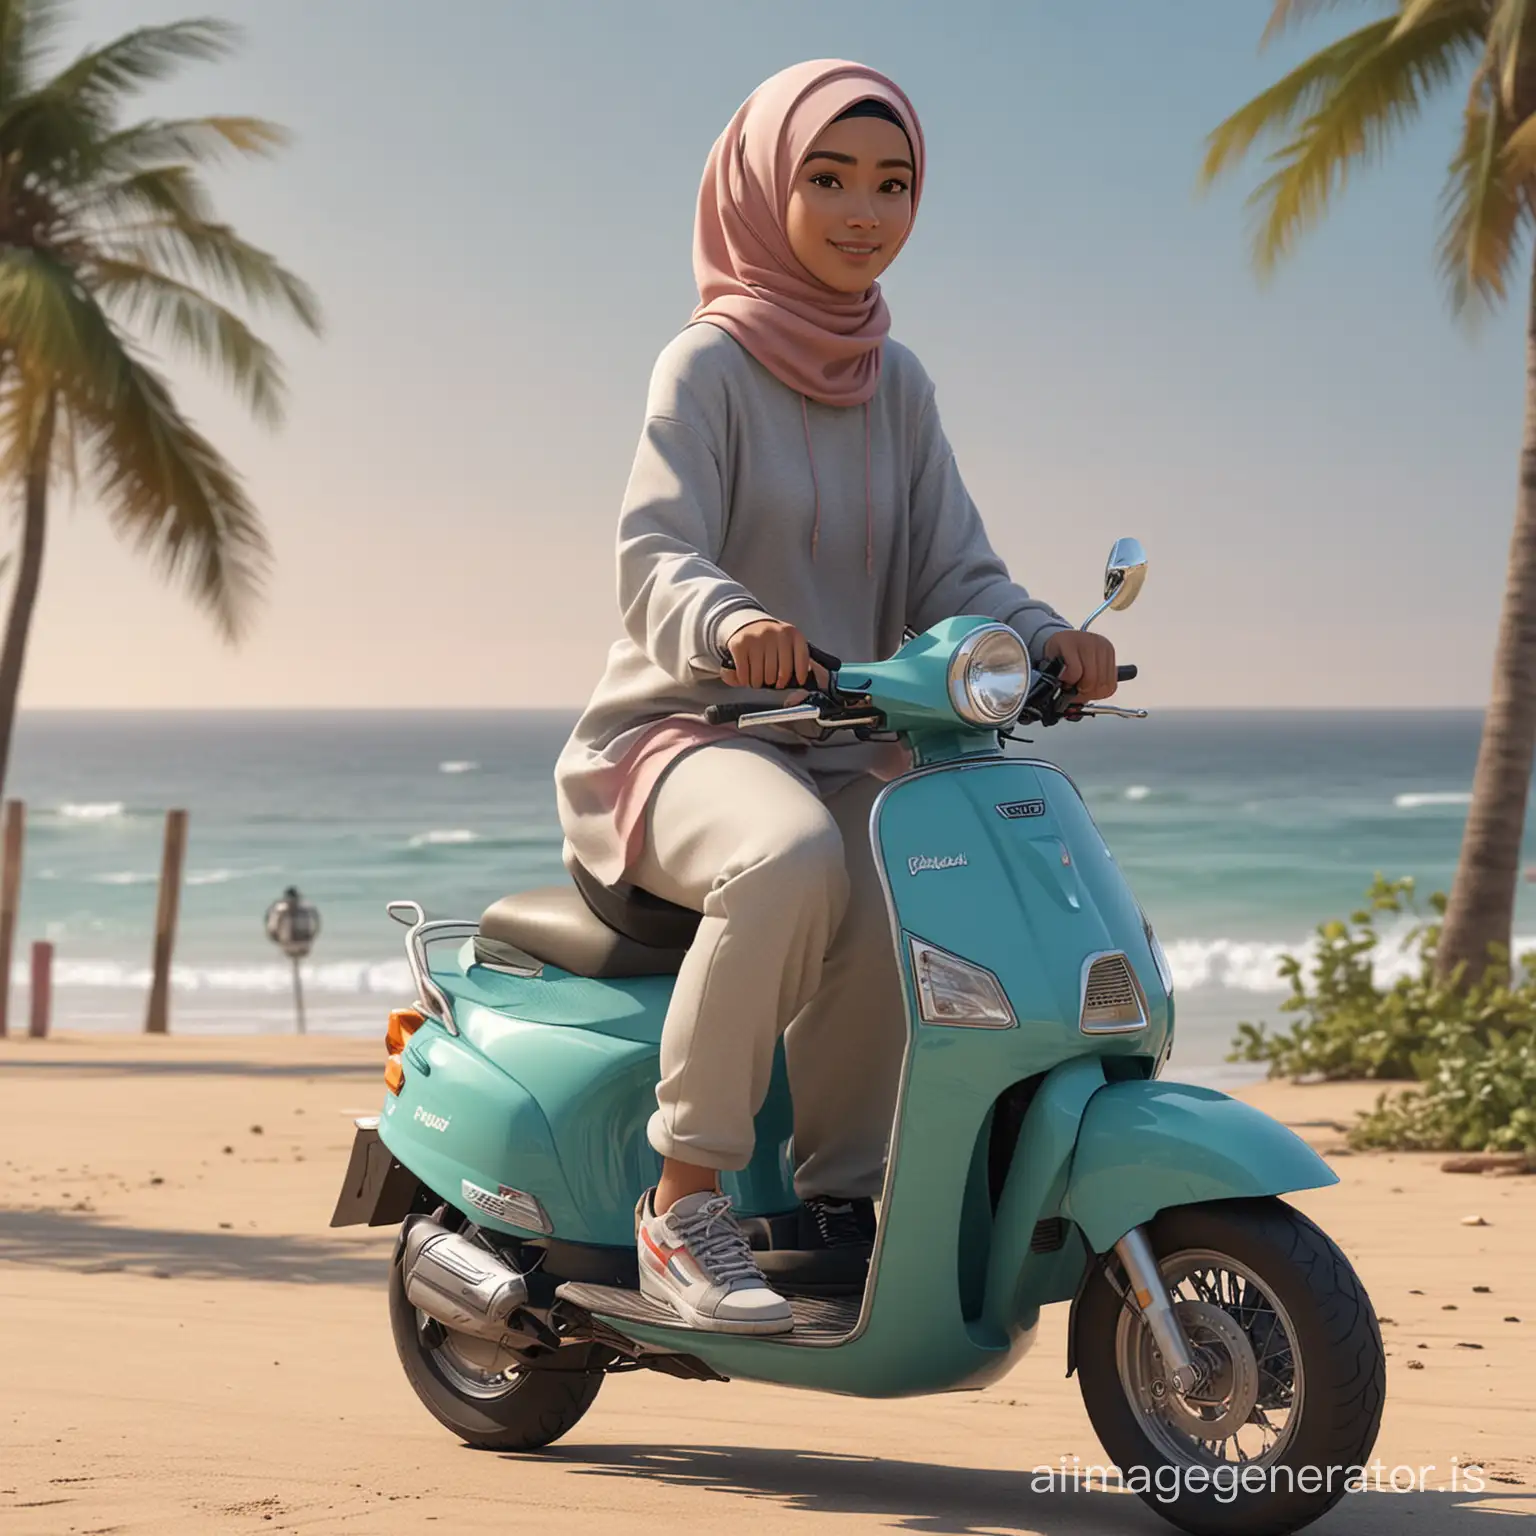 karikatur 4D wanita Indonesia, rambut pendek, menaiki skuter, berboncengan dengan wanita berhijab cantik umur 20 tahun, memakai Hoodie, sepatu kets, suasana pantai Indonesia, realistis, fokus,8K